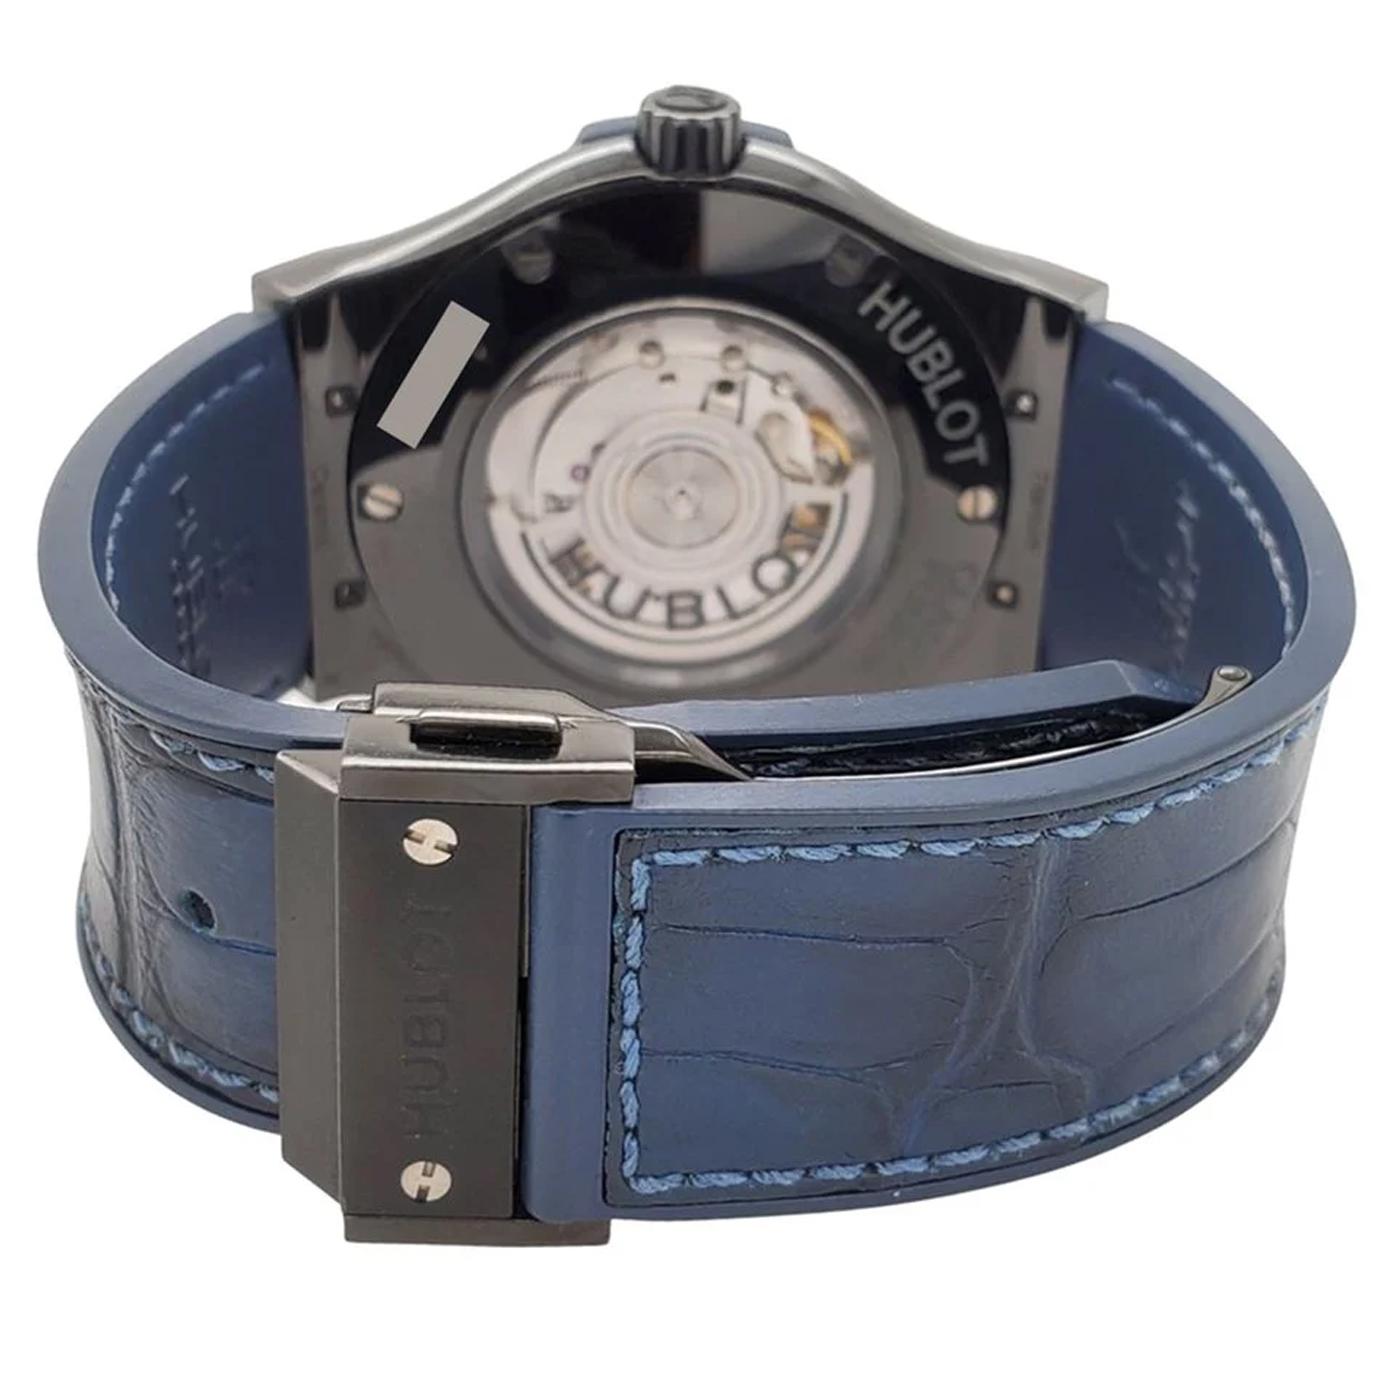 Modernist Hublot Classic Fusion 45mm Black Ceramic Bezel Blue Dial Watch 511.CM.7170.LR For Sale